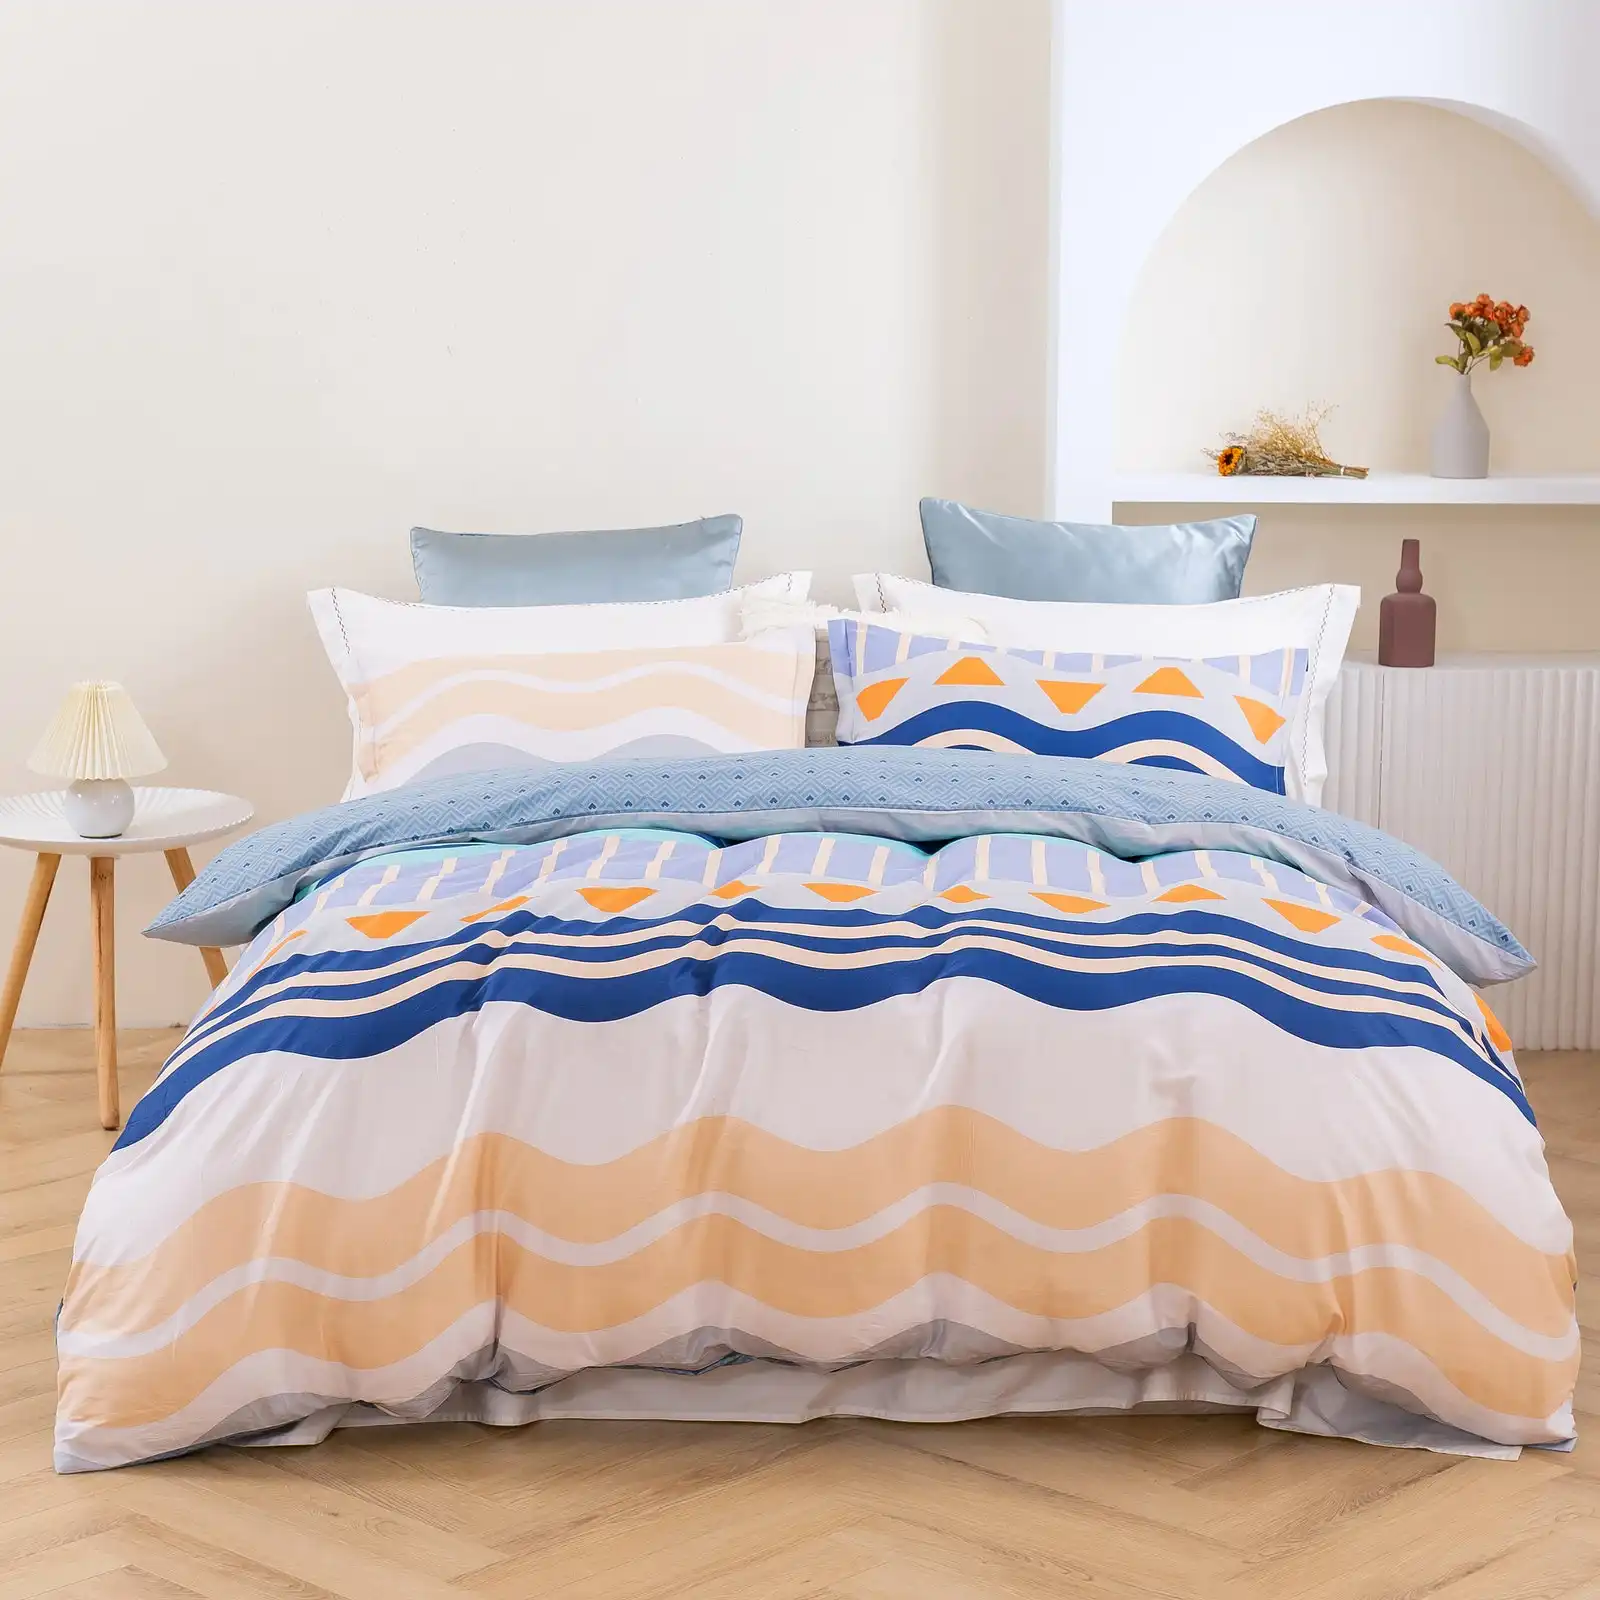 Dreamaker Capri 100% Cotton Reversible Quilt Cover Set Double Bed